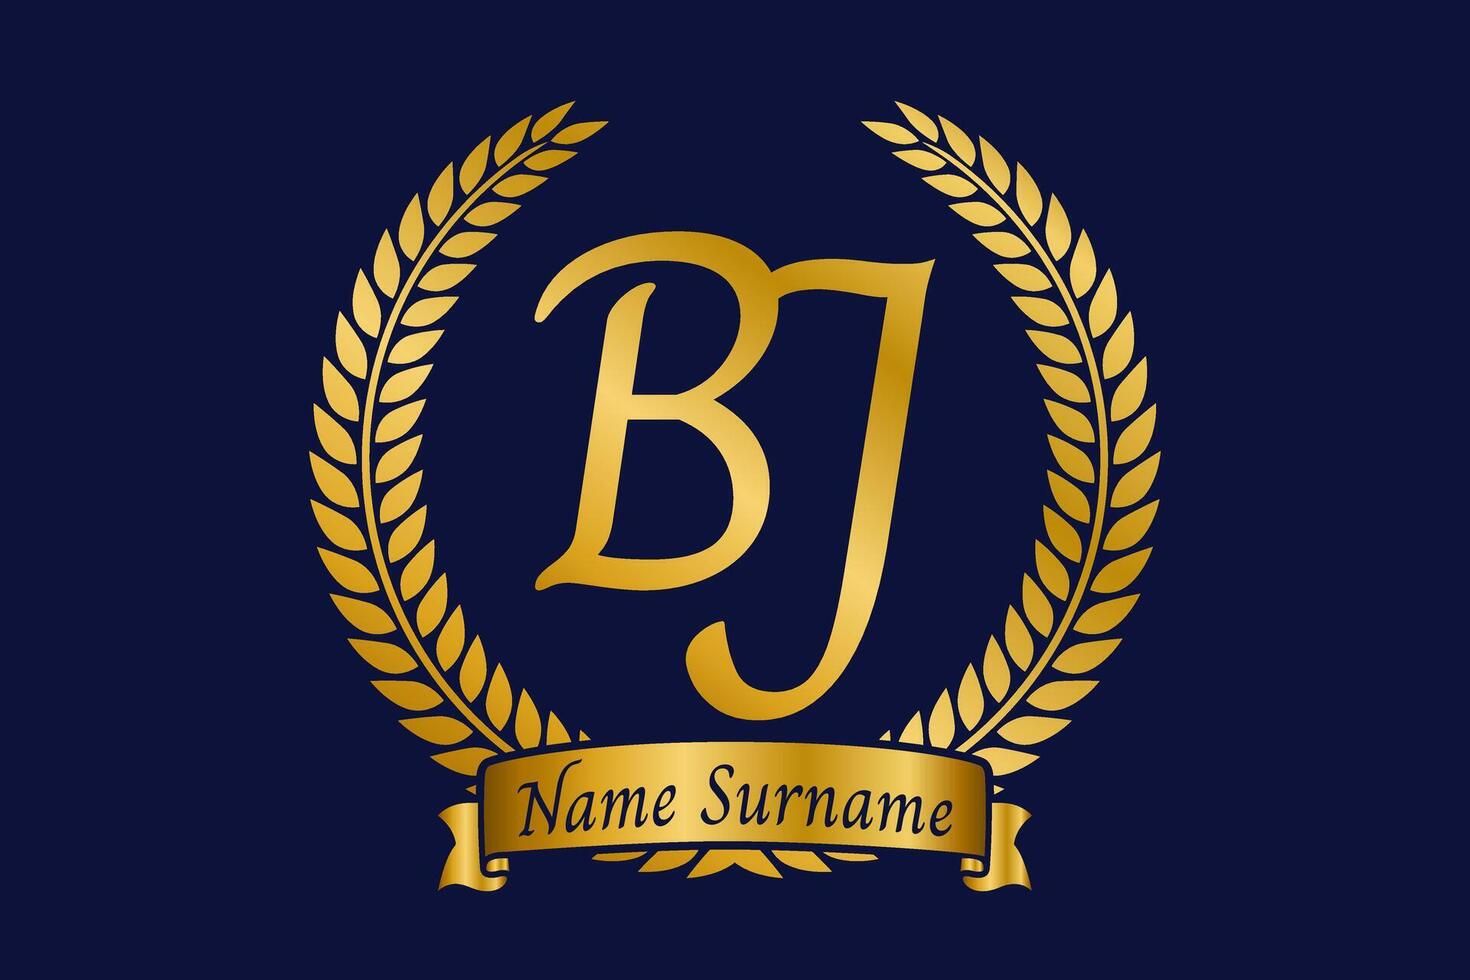 eerste brief b en j, bj monogram logo ontwerp met laurier lauwerkrans. luxe gouden schoonschrift lettertype. vector